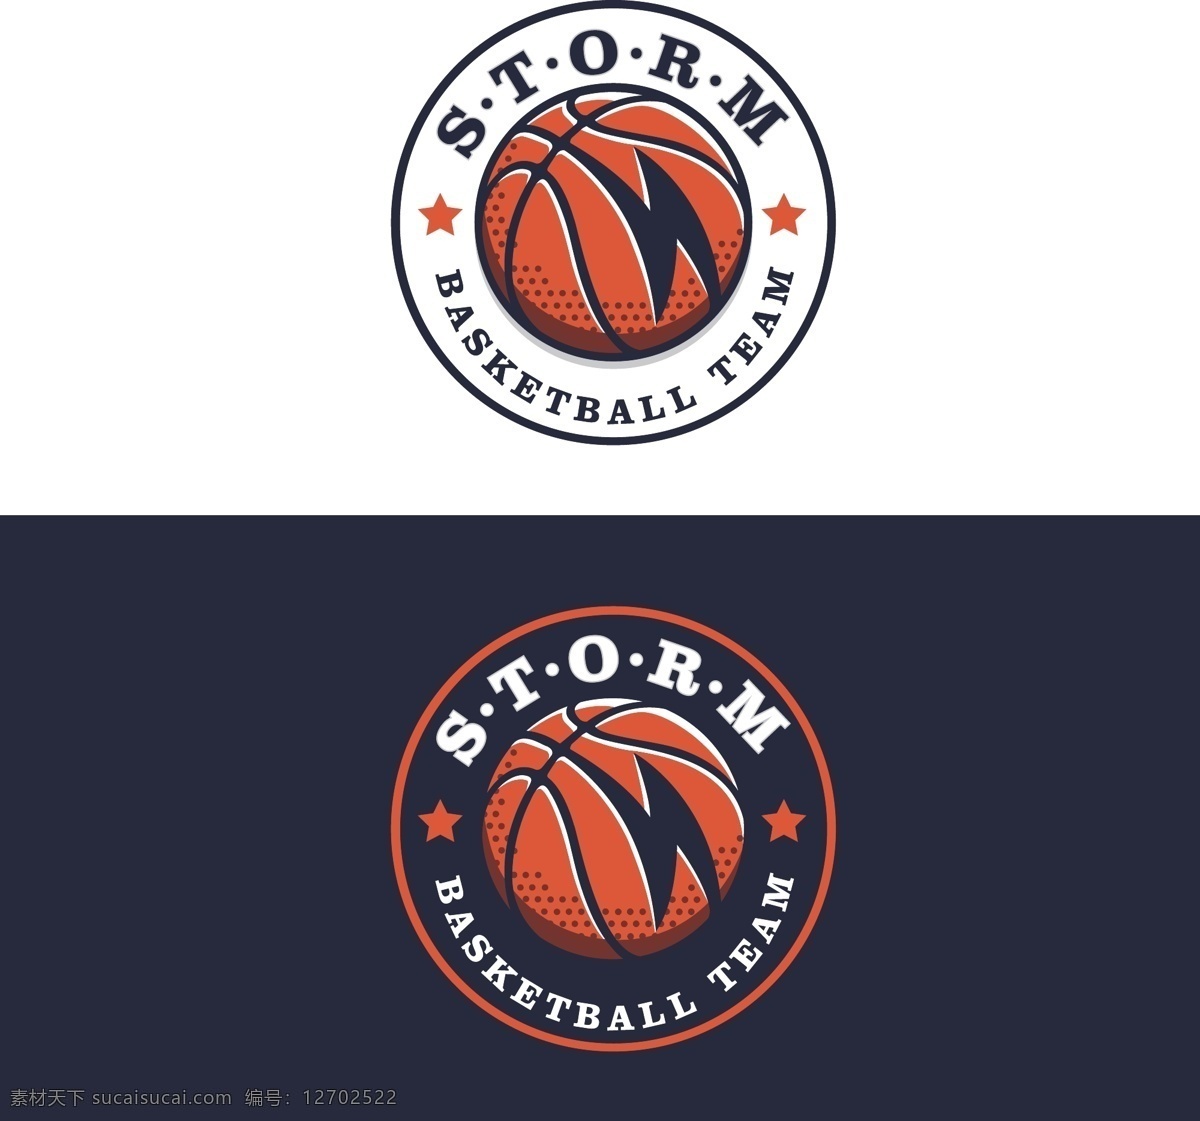 蓝 球队 logo 体育 队标 矢量logo 篮球队标 量图库 矢量 logo设计